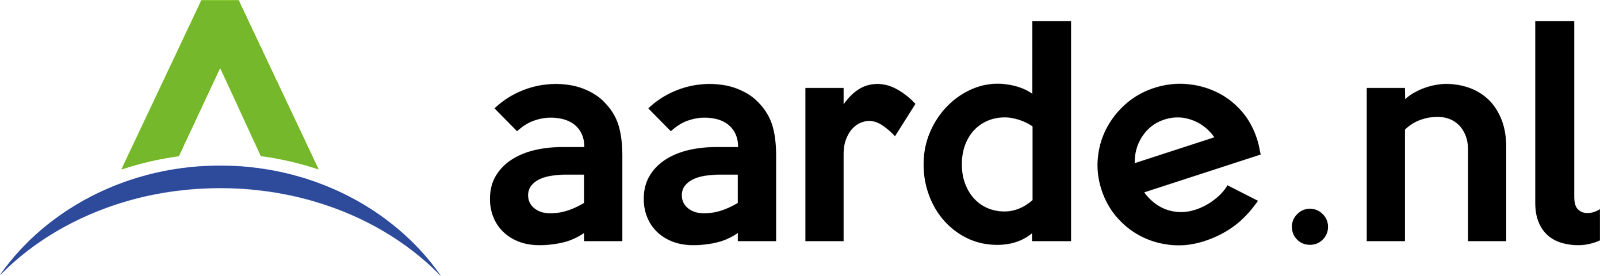 aarde.nl logo